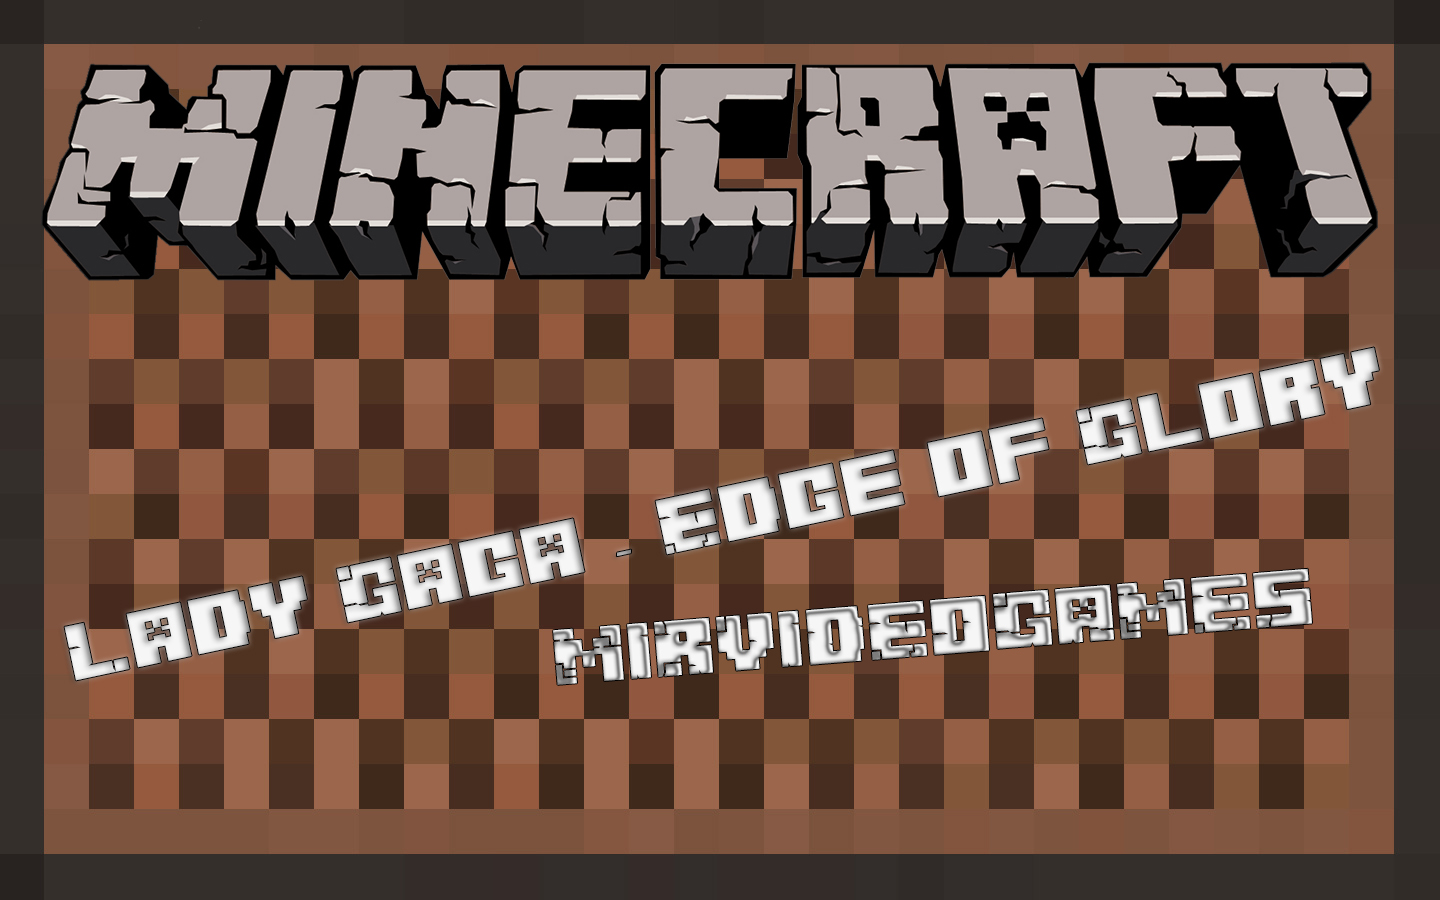 Скачать [Note block #32] ♫ Lady Gaga - Edge of Glory ♫ для Minecraft Бесплатно